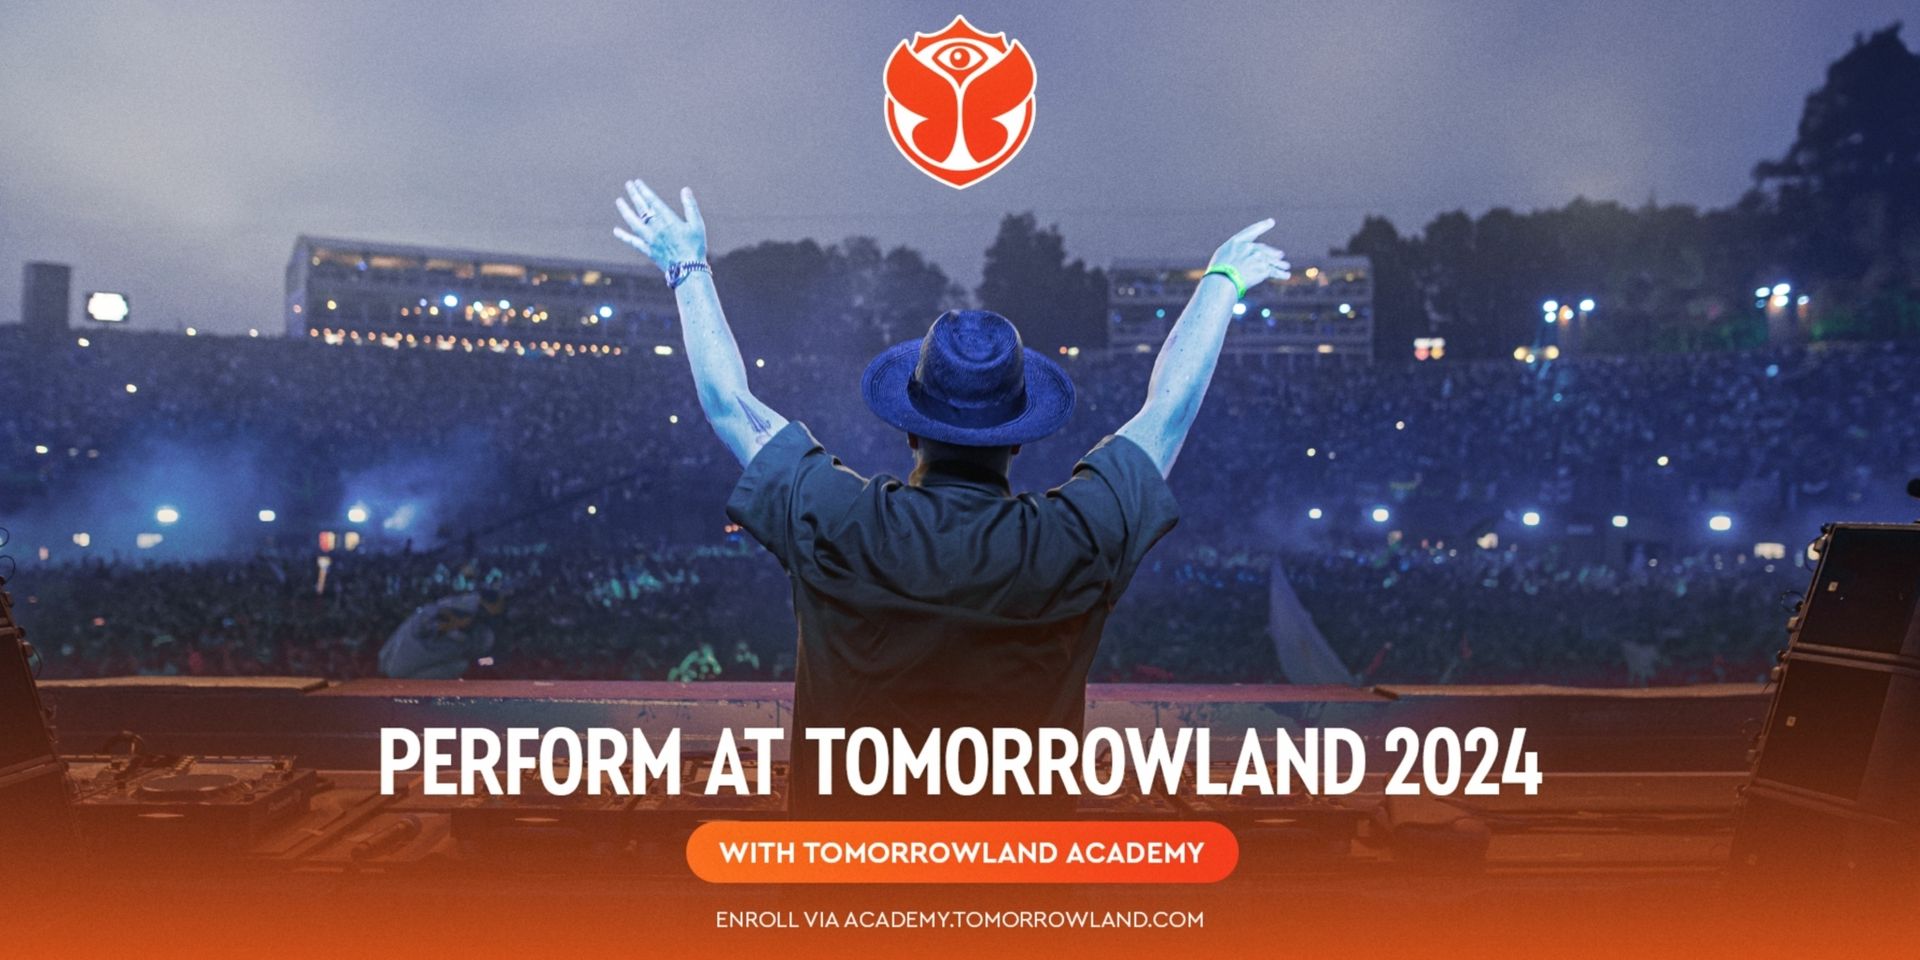 Perform at 
Tomorrowland 2024!